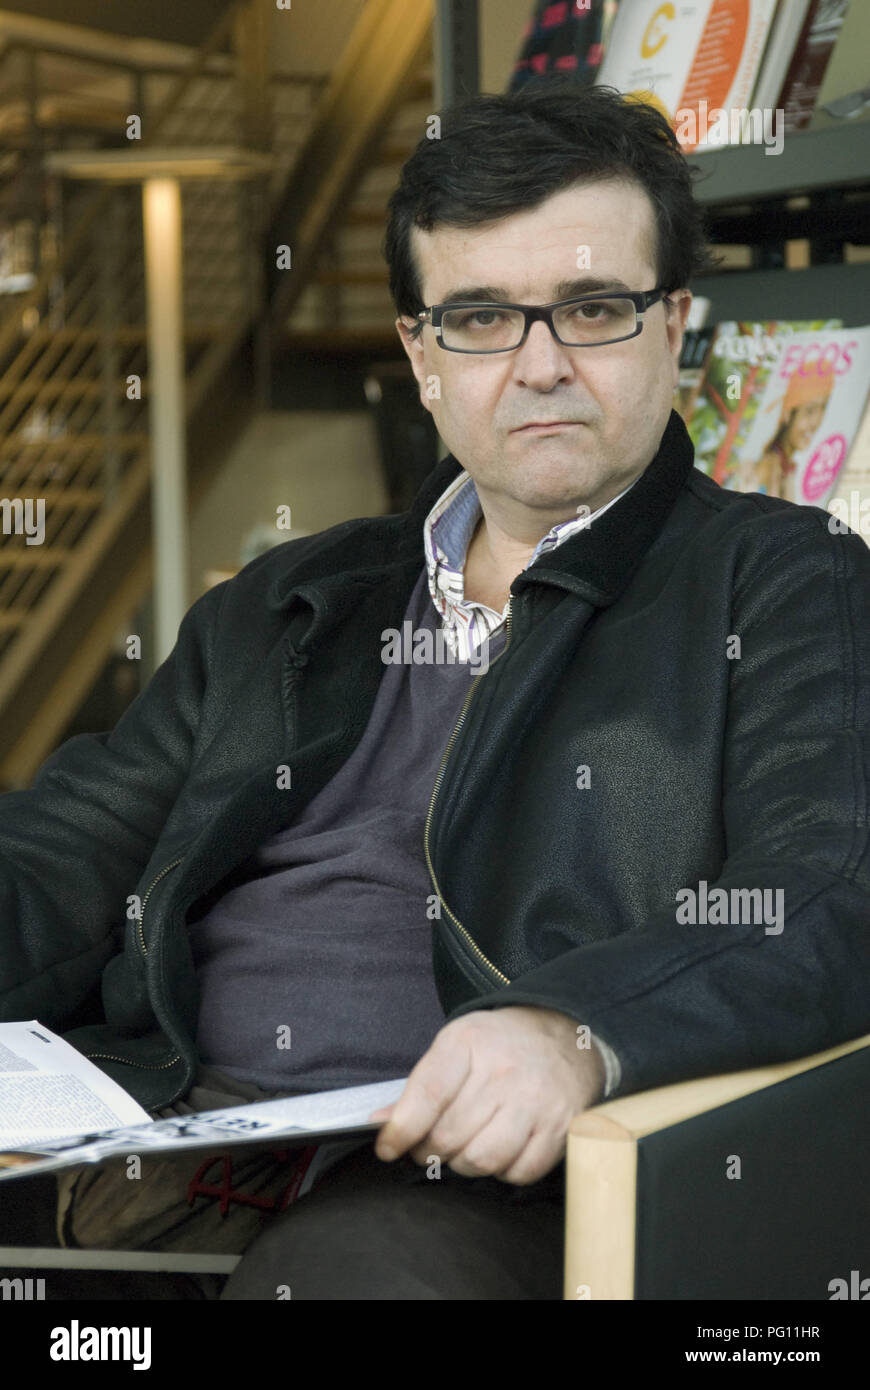 Berlín, 23.02.2011: Retrato de Javier Cercas, escritor, profesor de literatura española en la Universidad de Girona y autor Foto de stock